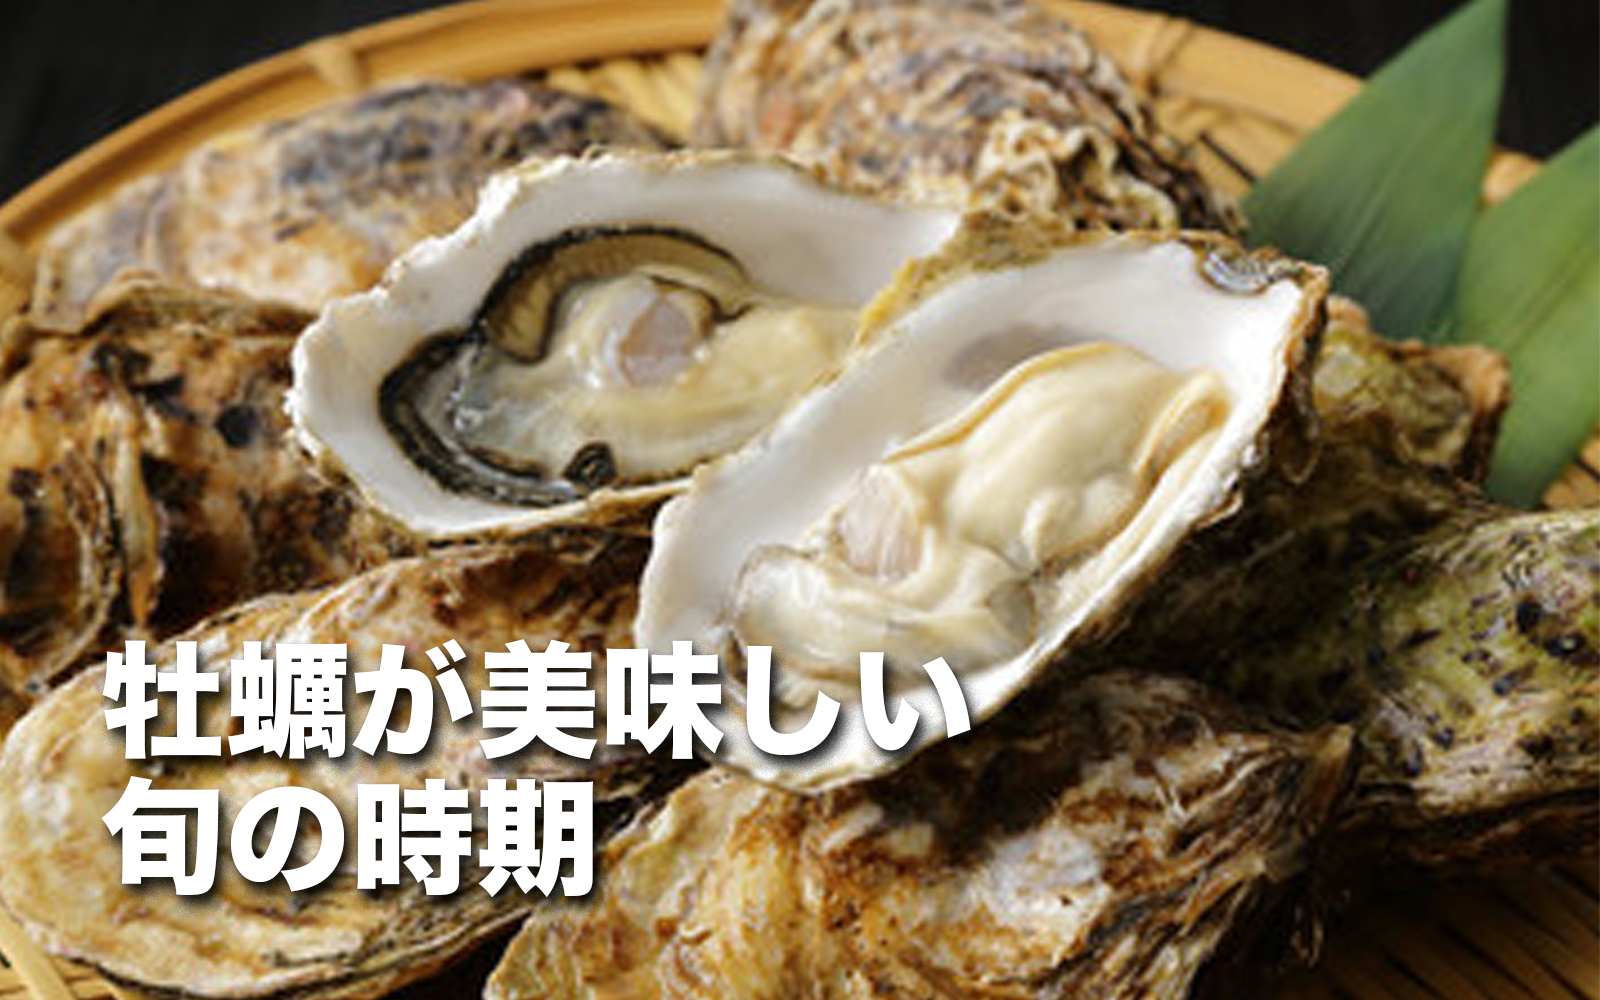 【徹底解説】牡蠣が美味しい旬の時期と種類による特徴を紹介